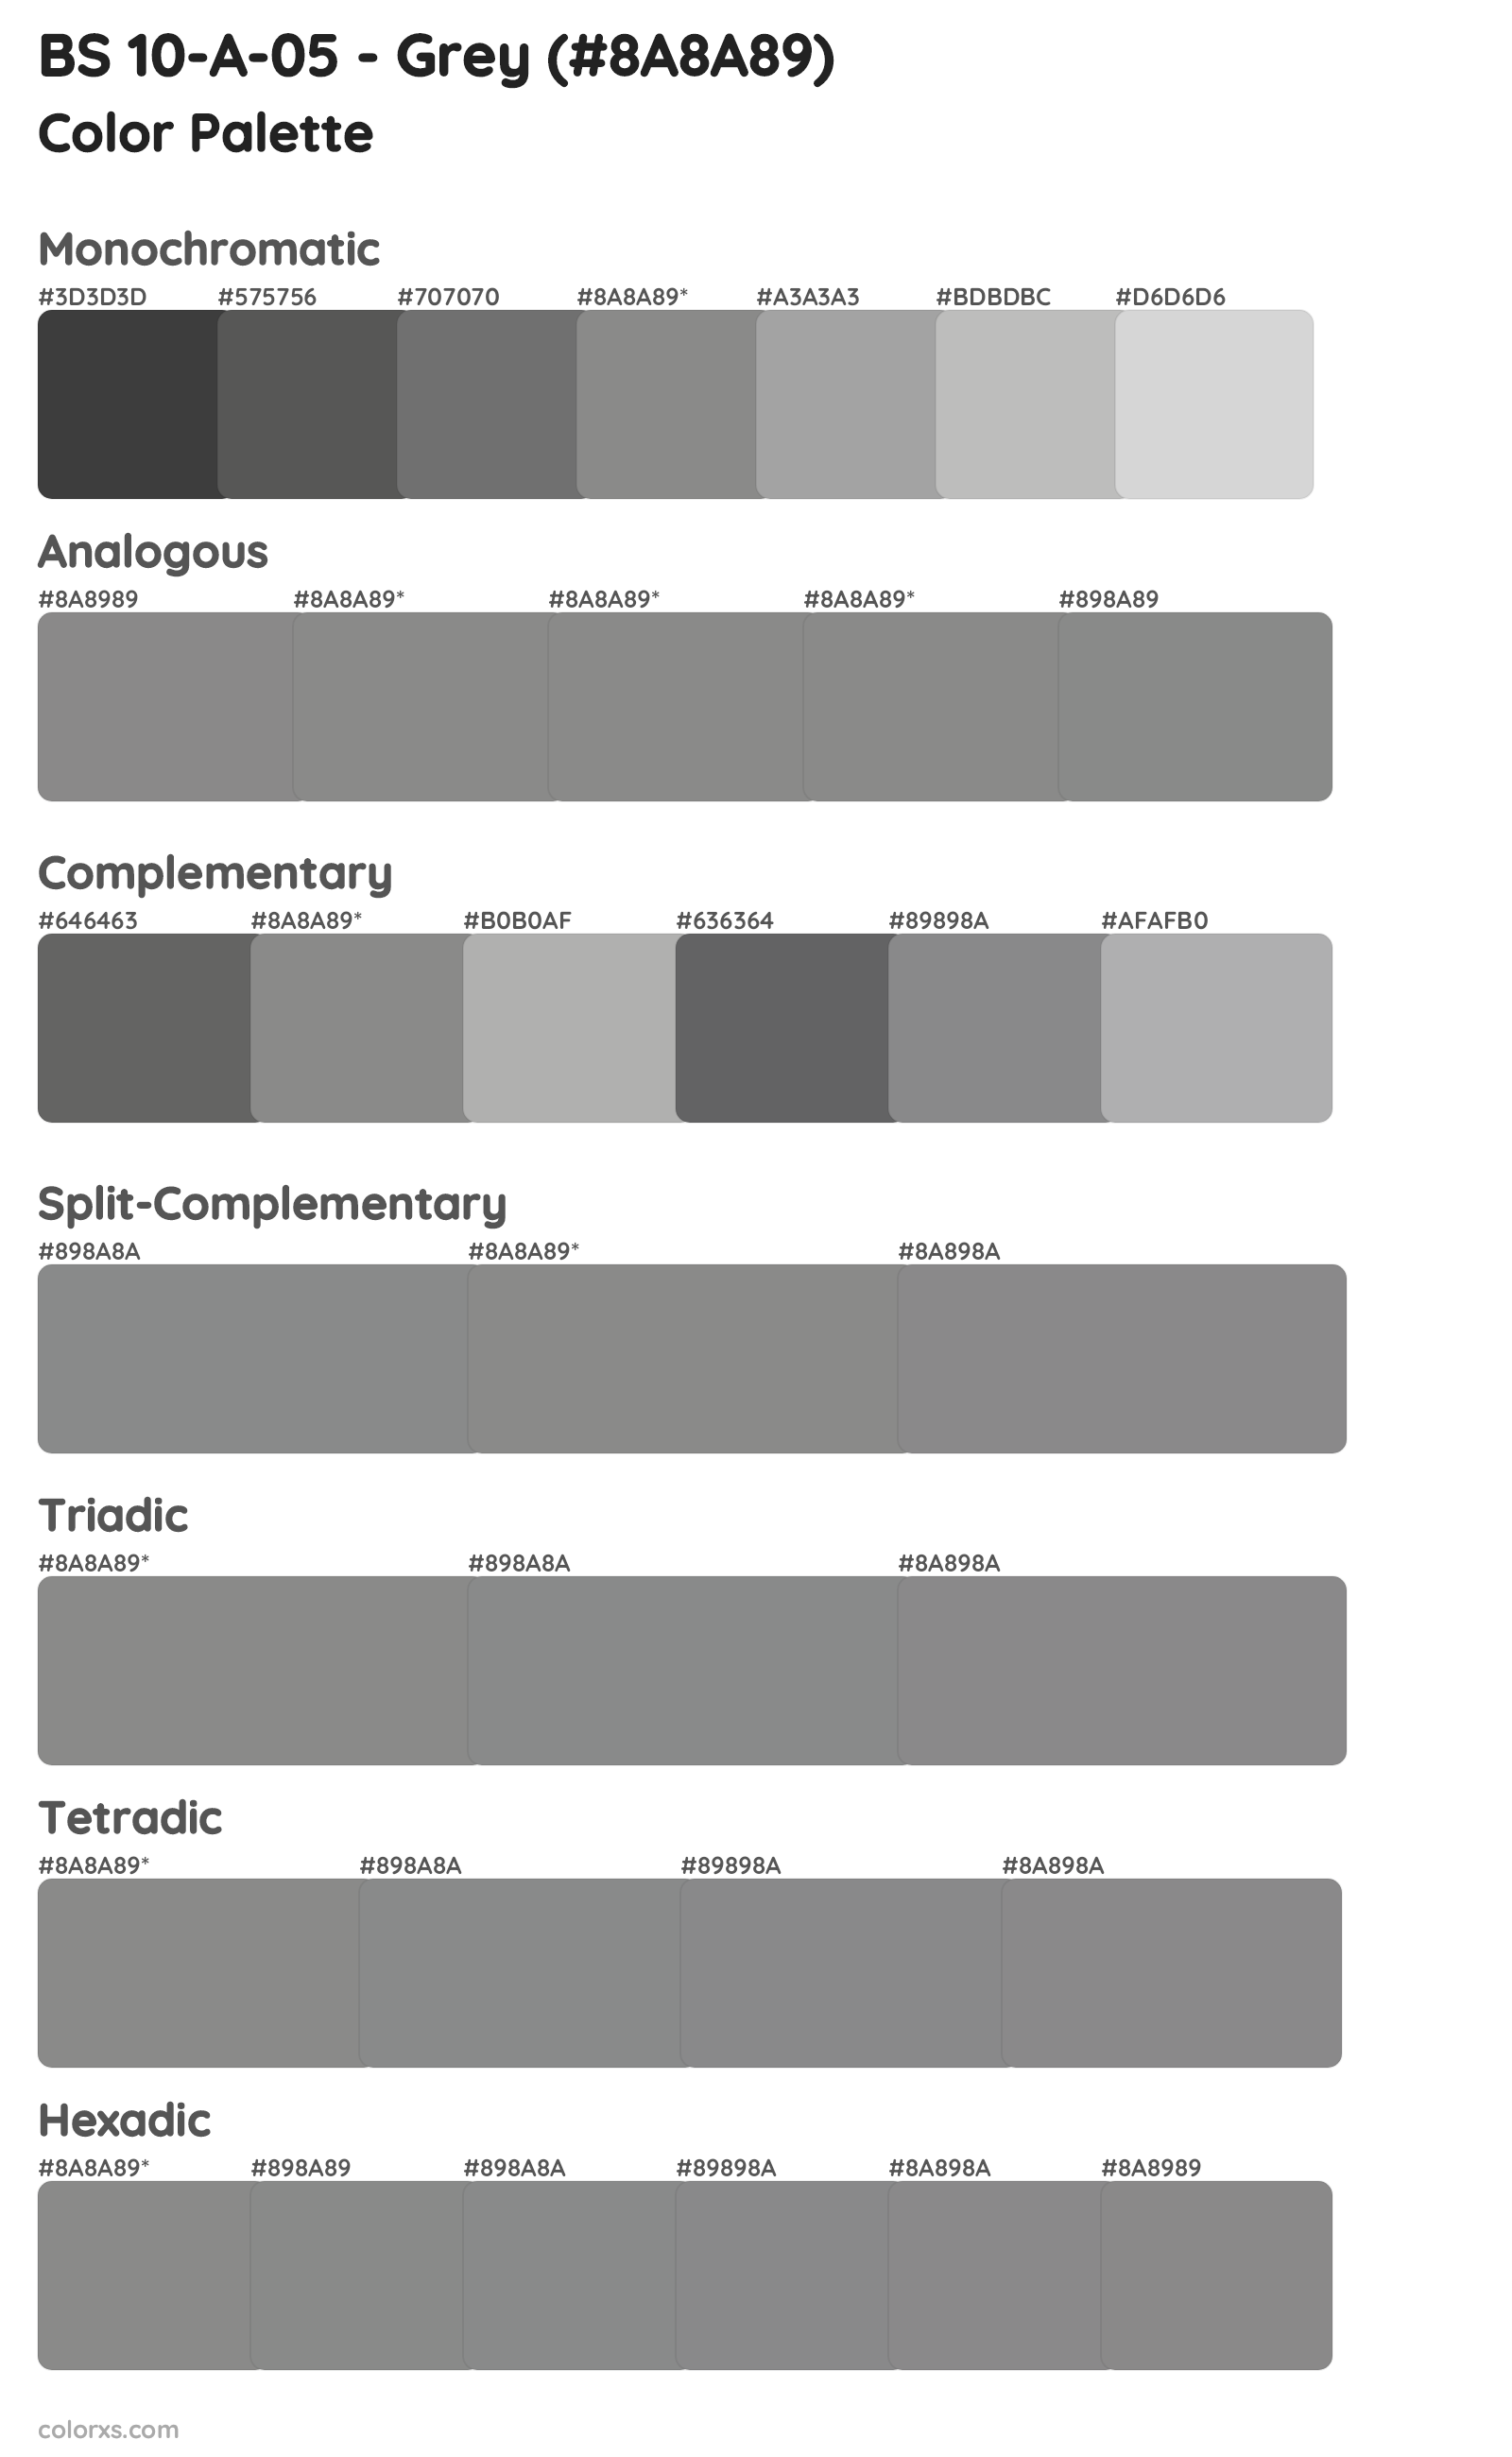 BS 10-A-05 - Grey Color Scheme Palettes